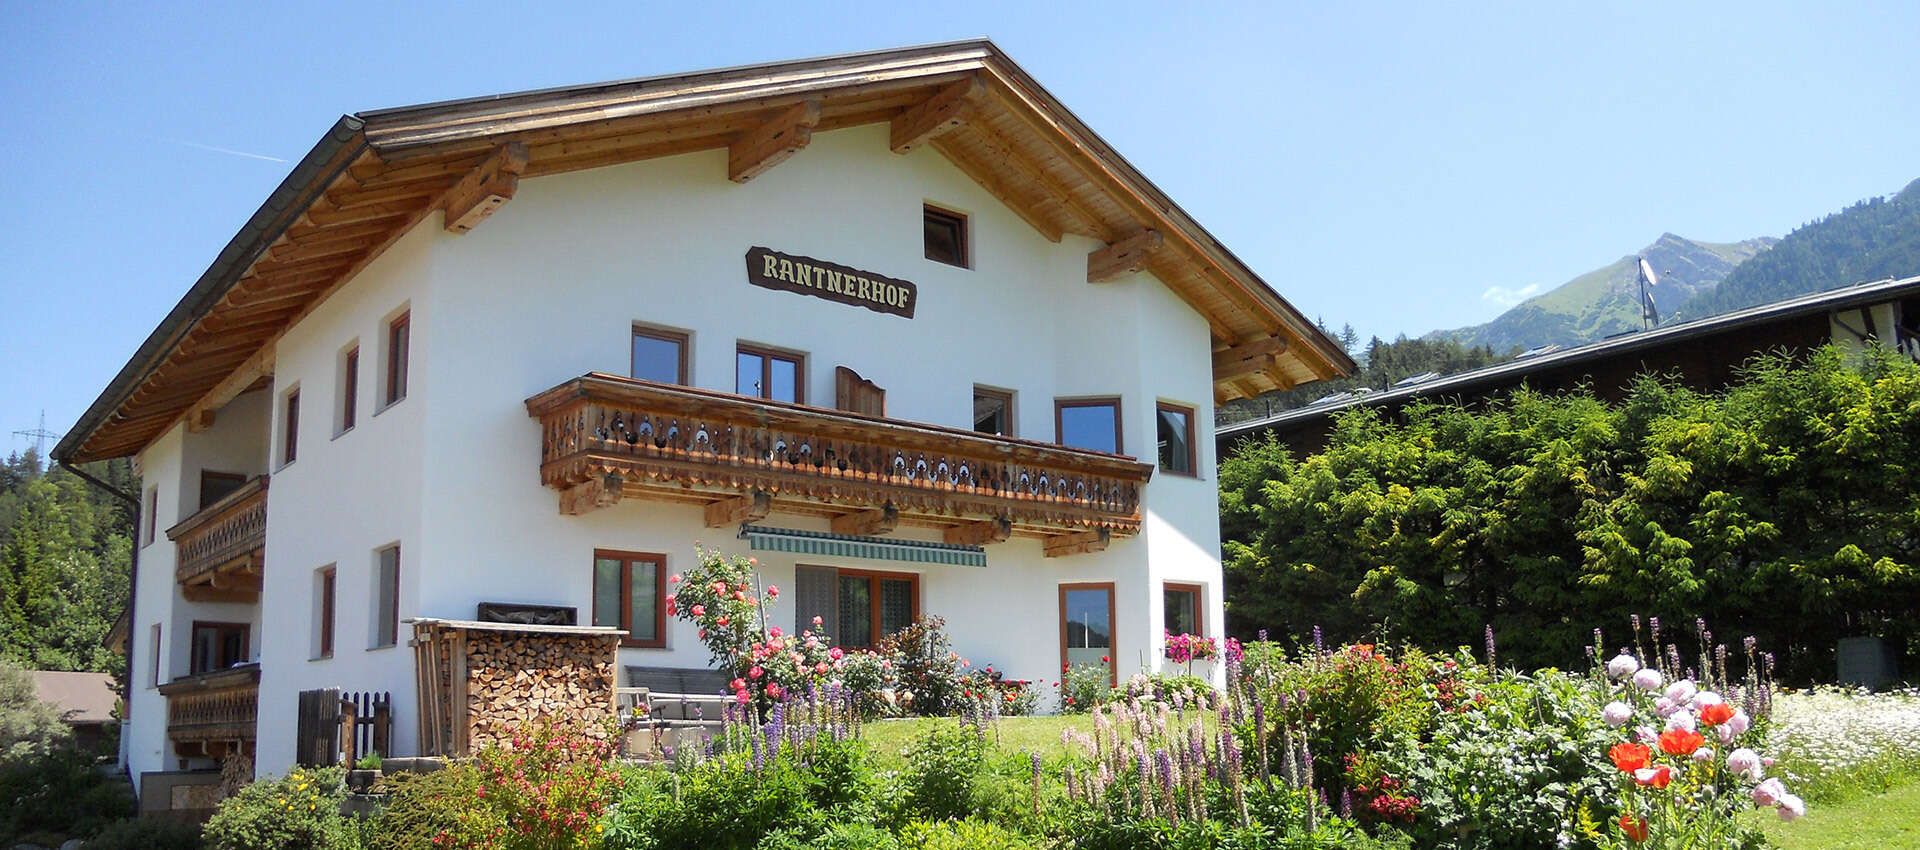 Appartementhaus Rantnerhof in Seefeld in Tirol